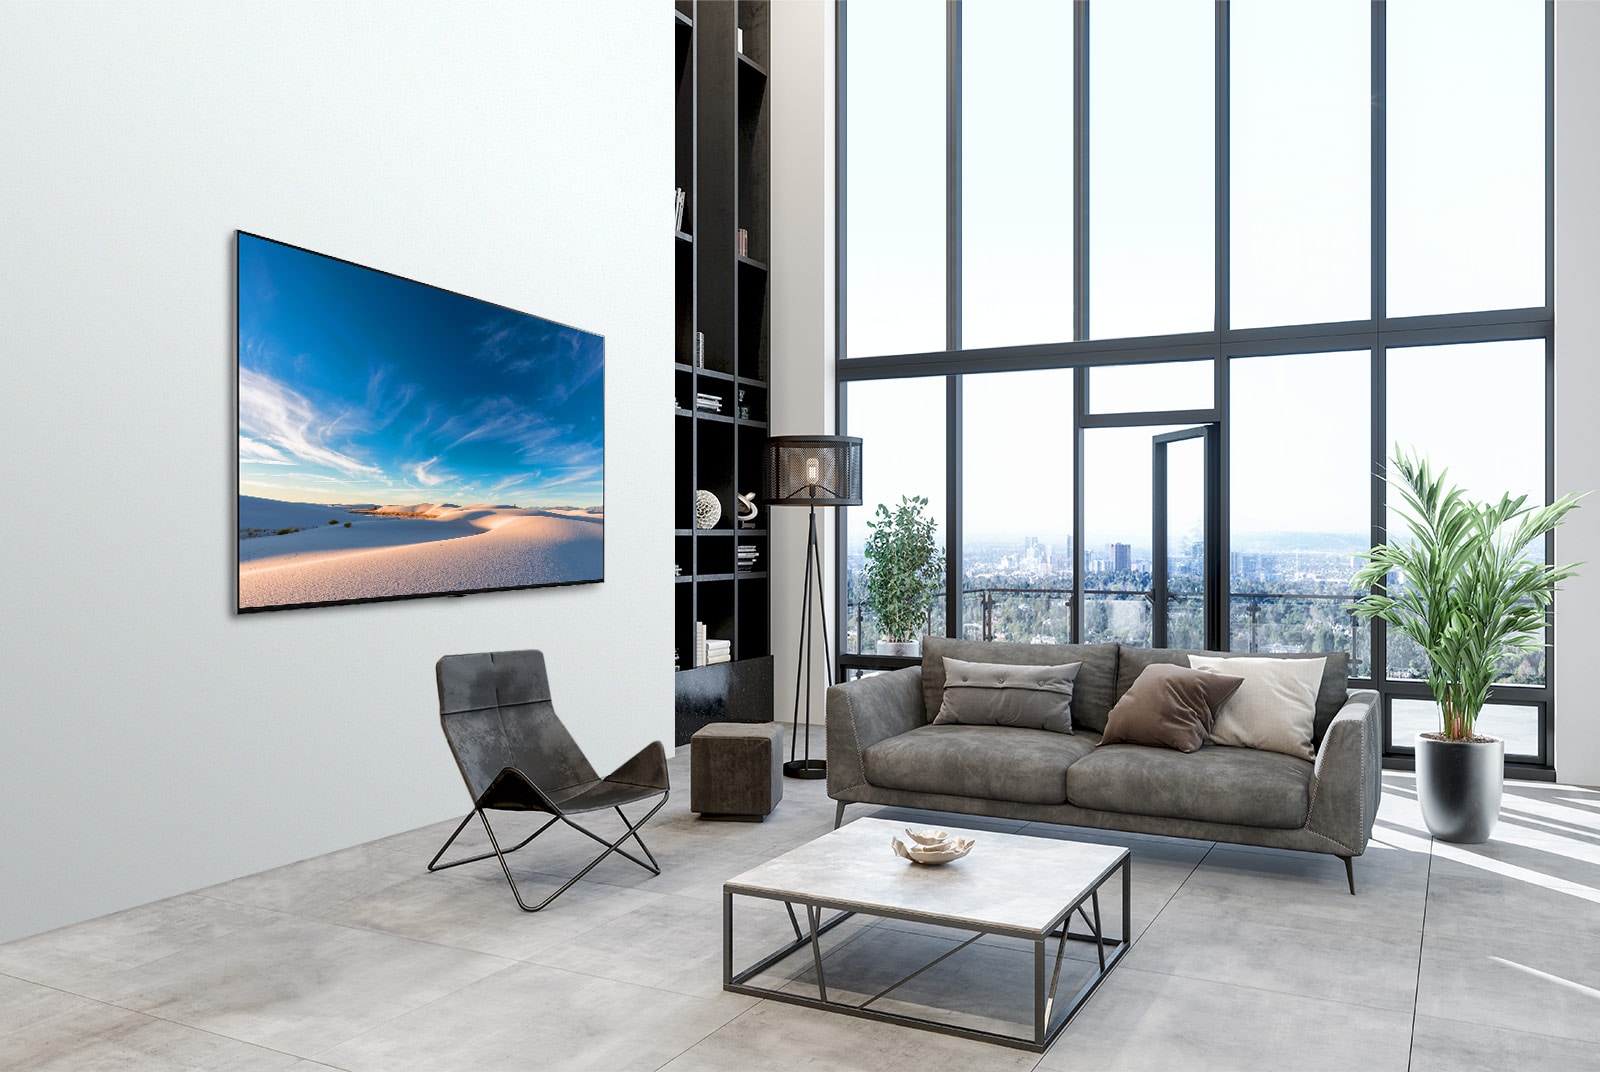 LG QNED televizor visi na steni v sodobni notranjosti.